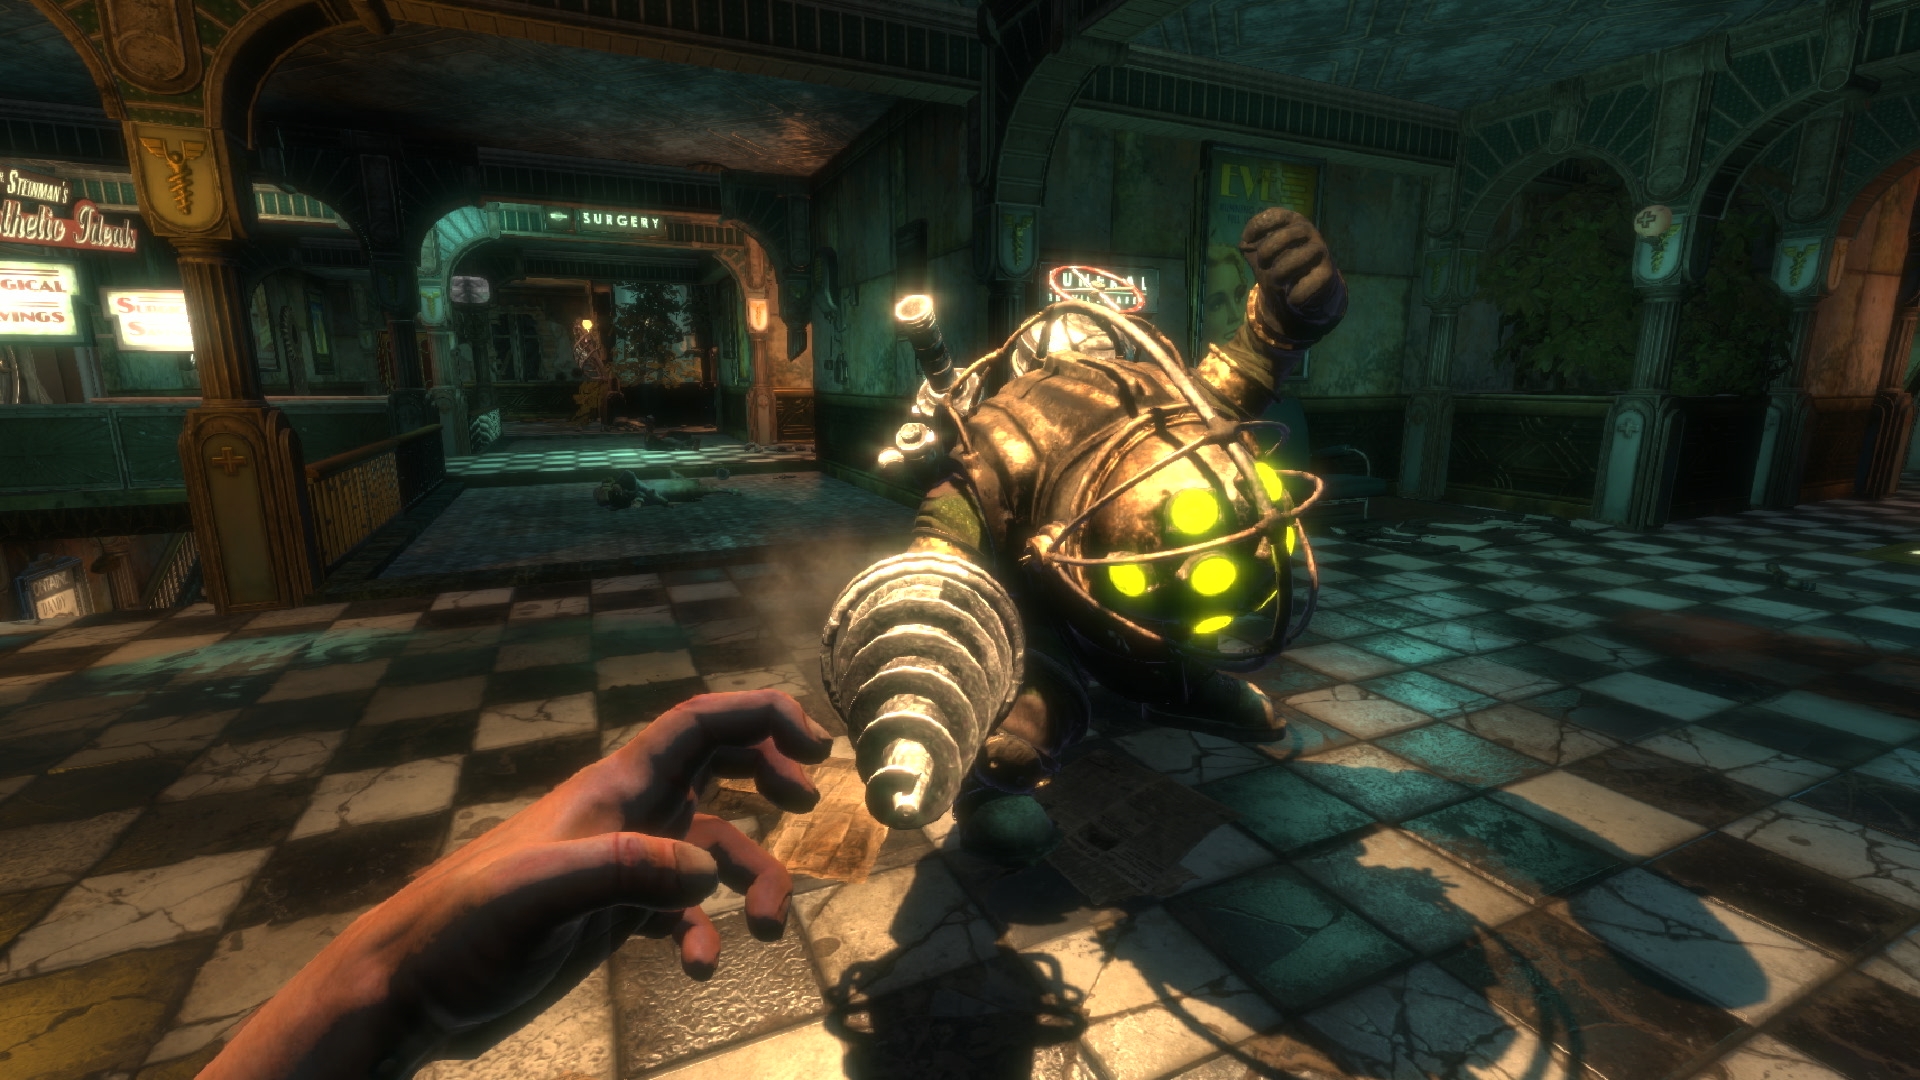 ข่าวลือ! BioShock 4 มีปัญหาในระหว่างการพัฒนา และอาจถูกเลื่อนวางจำหน่าย